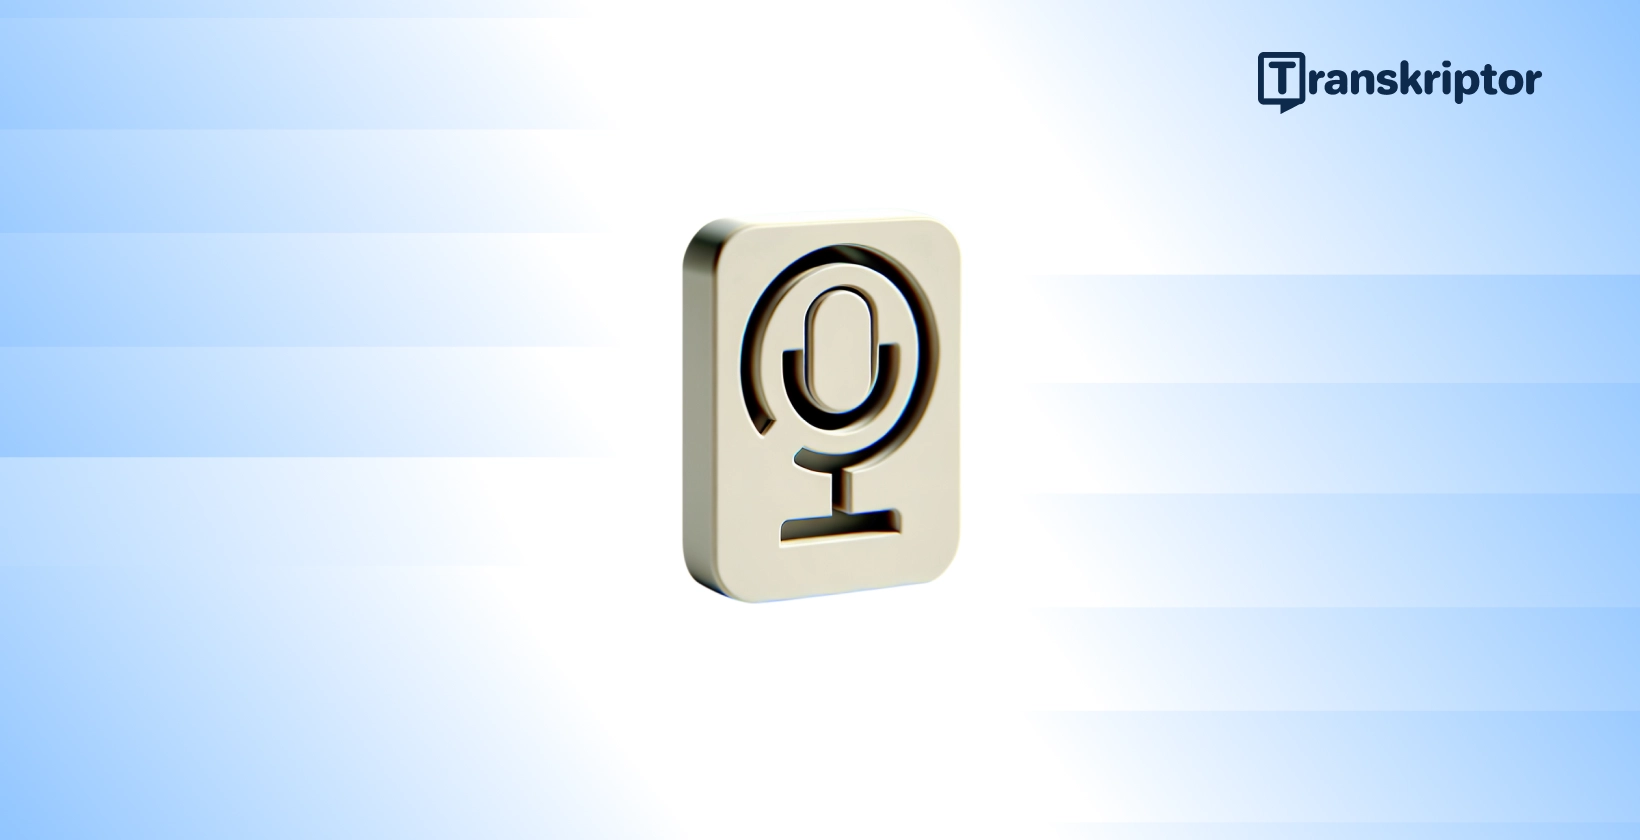 Mikrofon numbriga 9, mis tähistab arvandmete transkriptsiooni helisalvestistes.